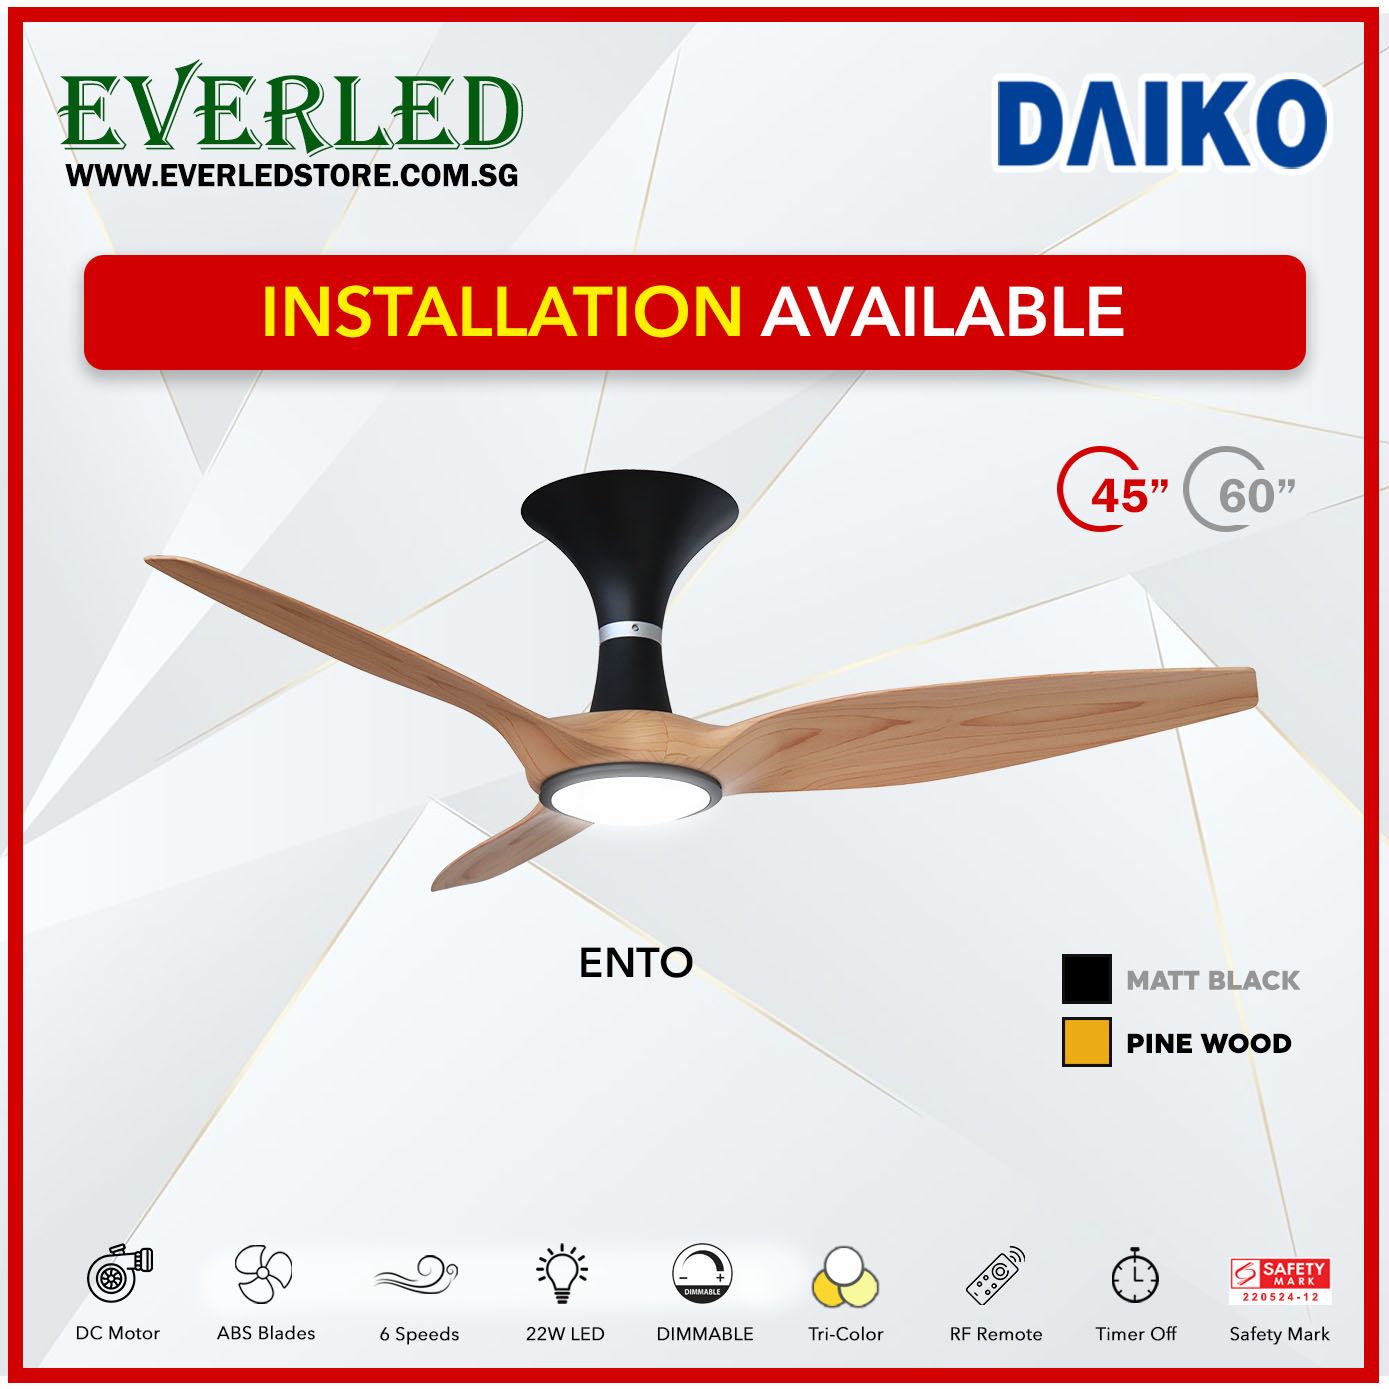 [Daiko 5 Room Ento Package] Daiko Ento 60 X 1 + Daiko Ento 45 X 4 (DC Inverter Fan)